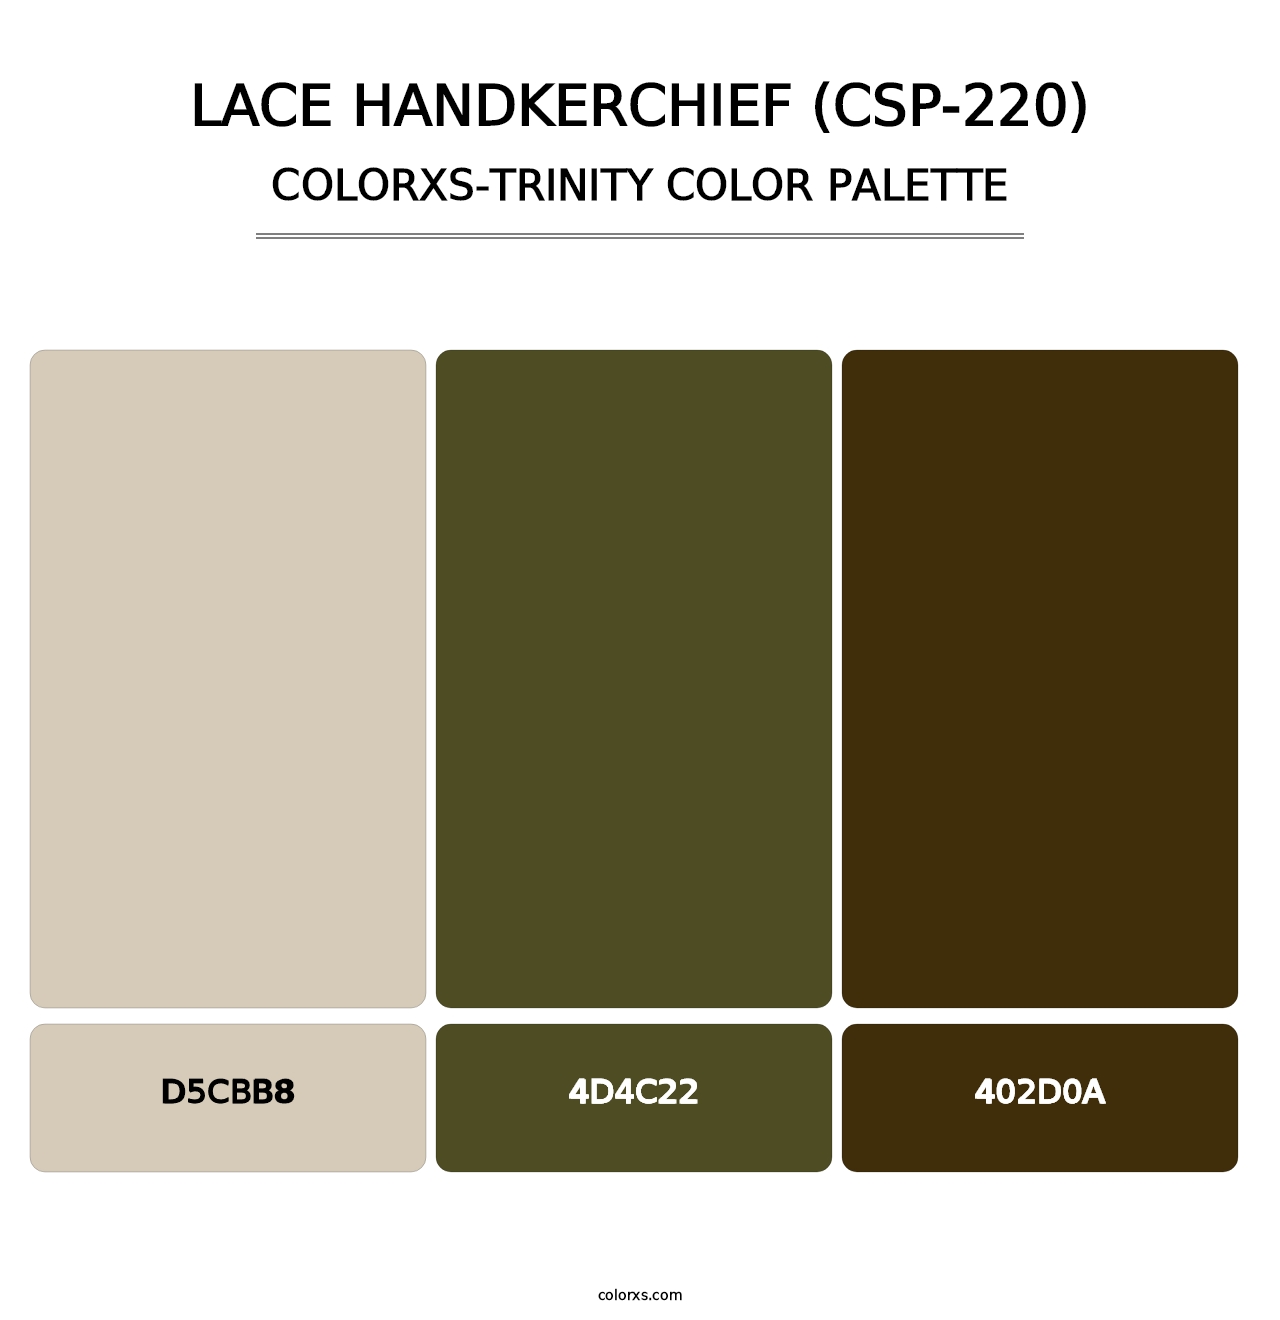 Lace Handkerchief (CSP-220) - Colorxs Trinity Palette